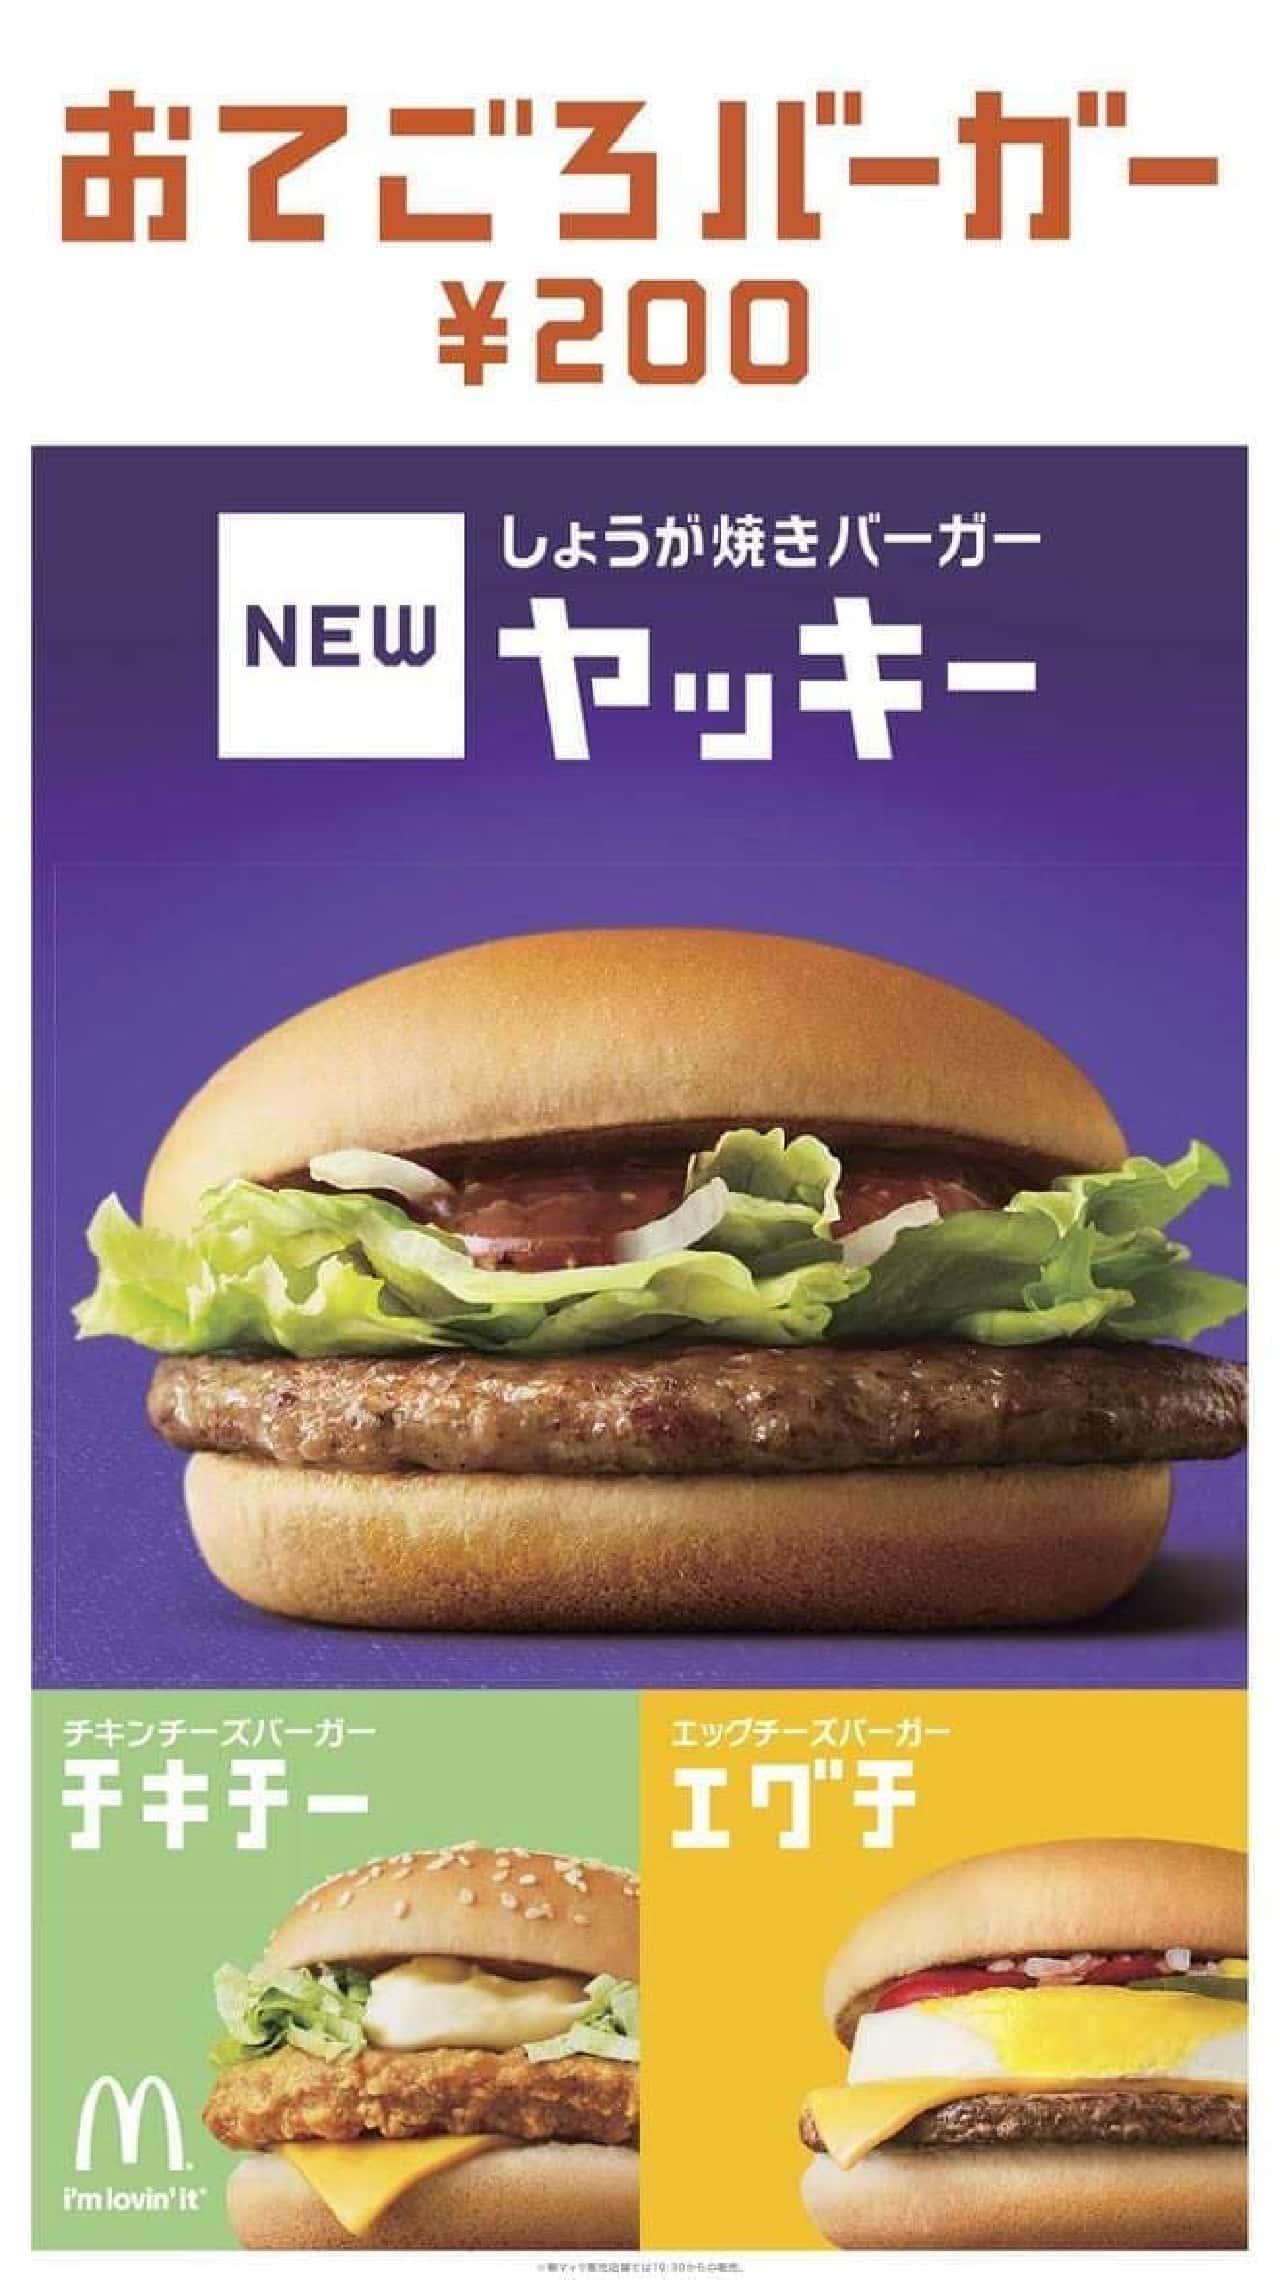 "Otegoro Burger" series